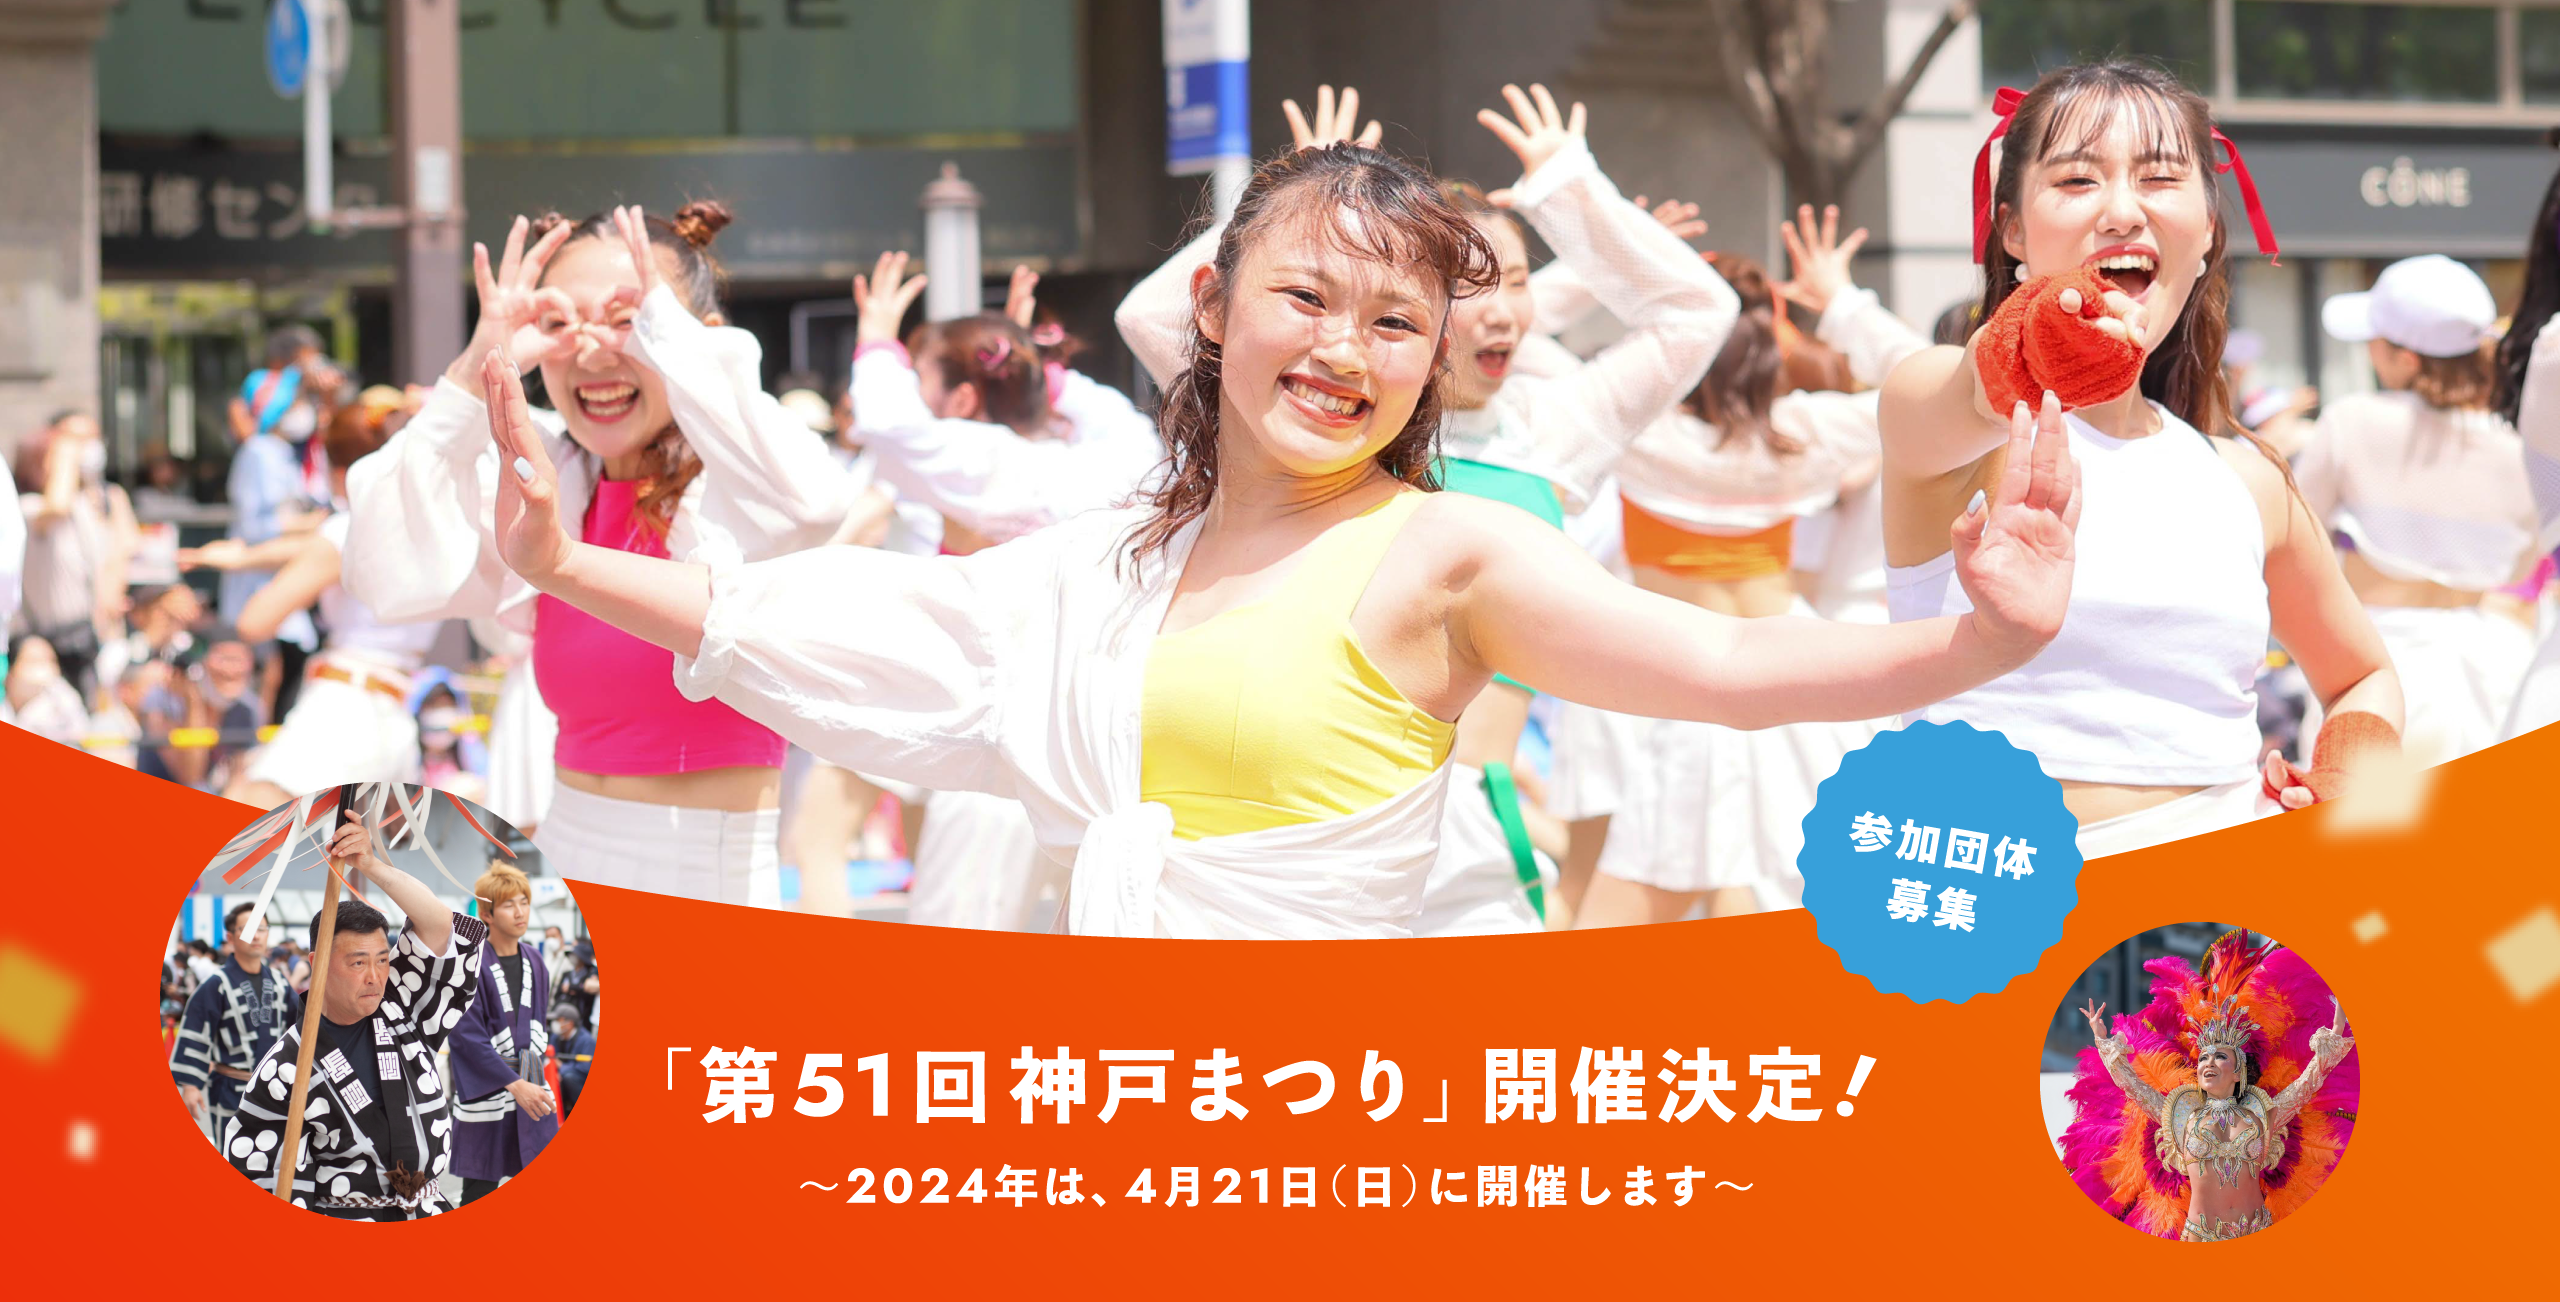 「第51回神戸まつり」開催決定! 〜2024年は、4月21日(日)に開催します〜 参加団体募集